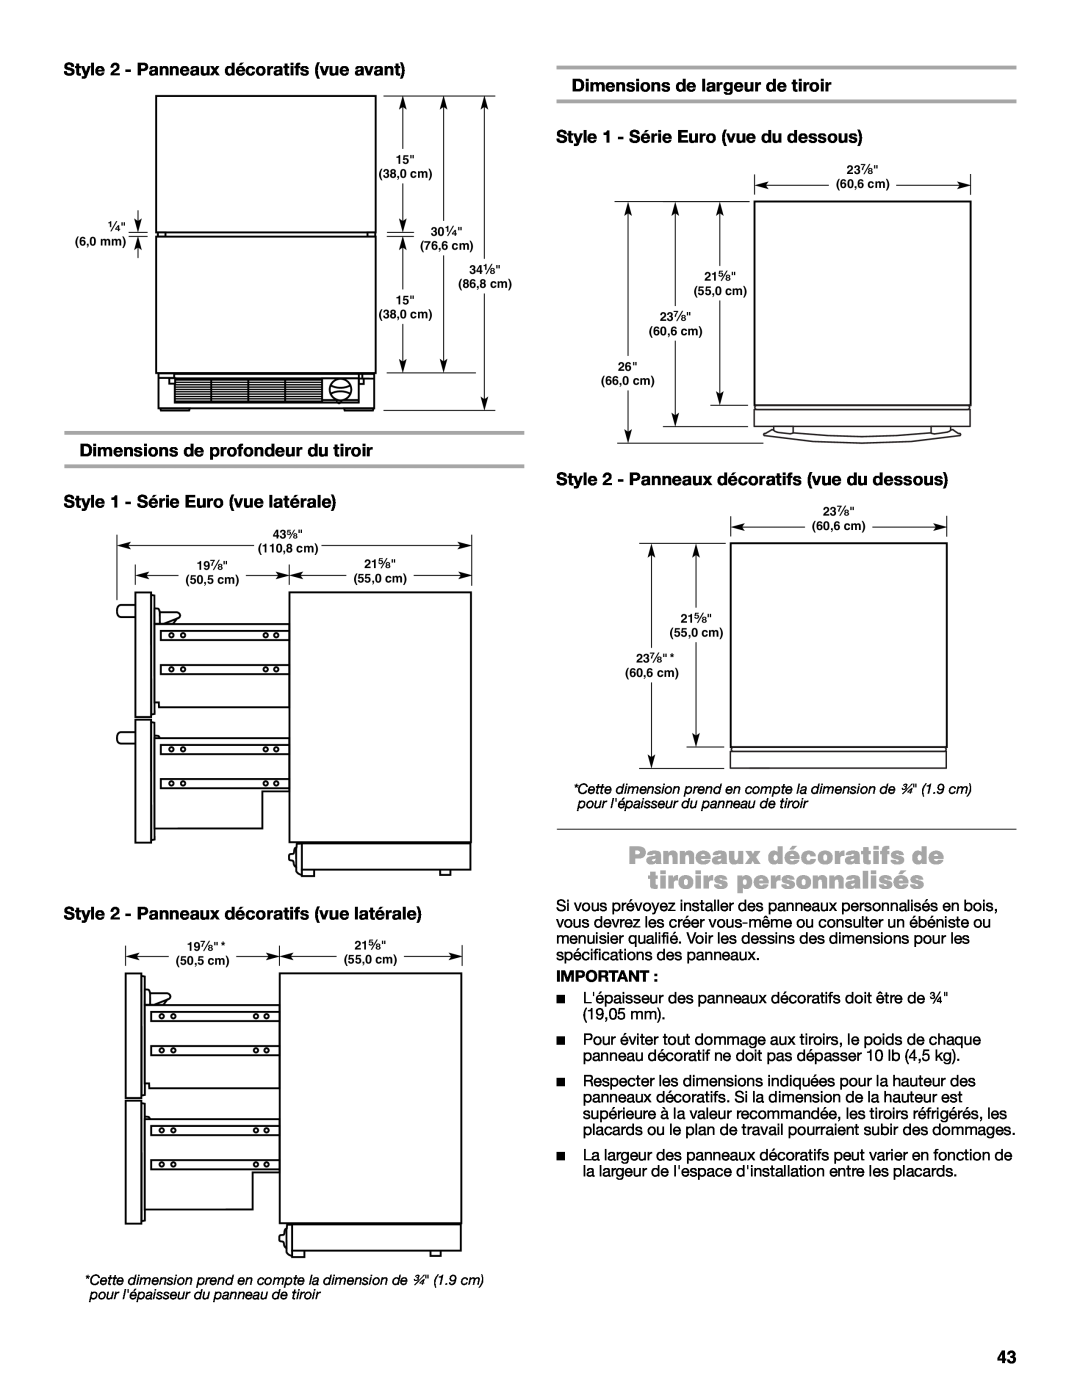 Jenn-Air W10549548A manual Panneaux décoratifs de tiroirs personnalisés, Style 2 - Panneaux décoratifs vue avant 